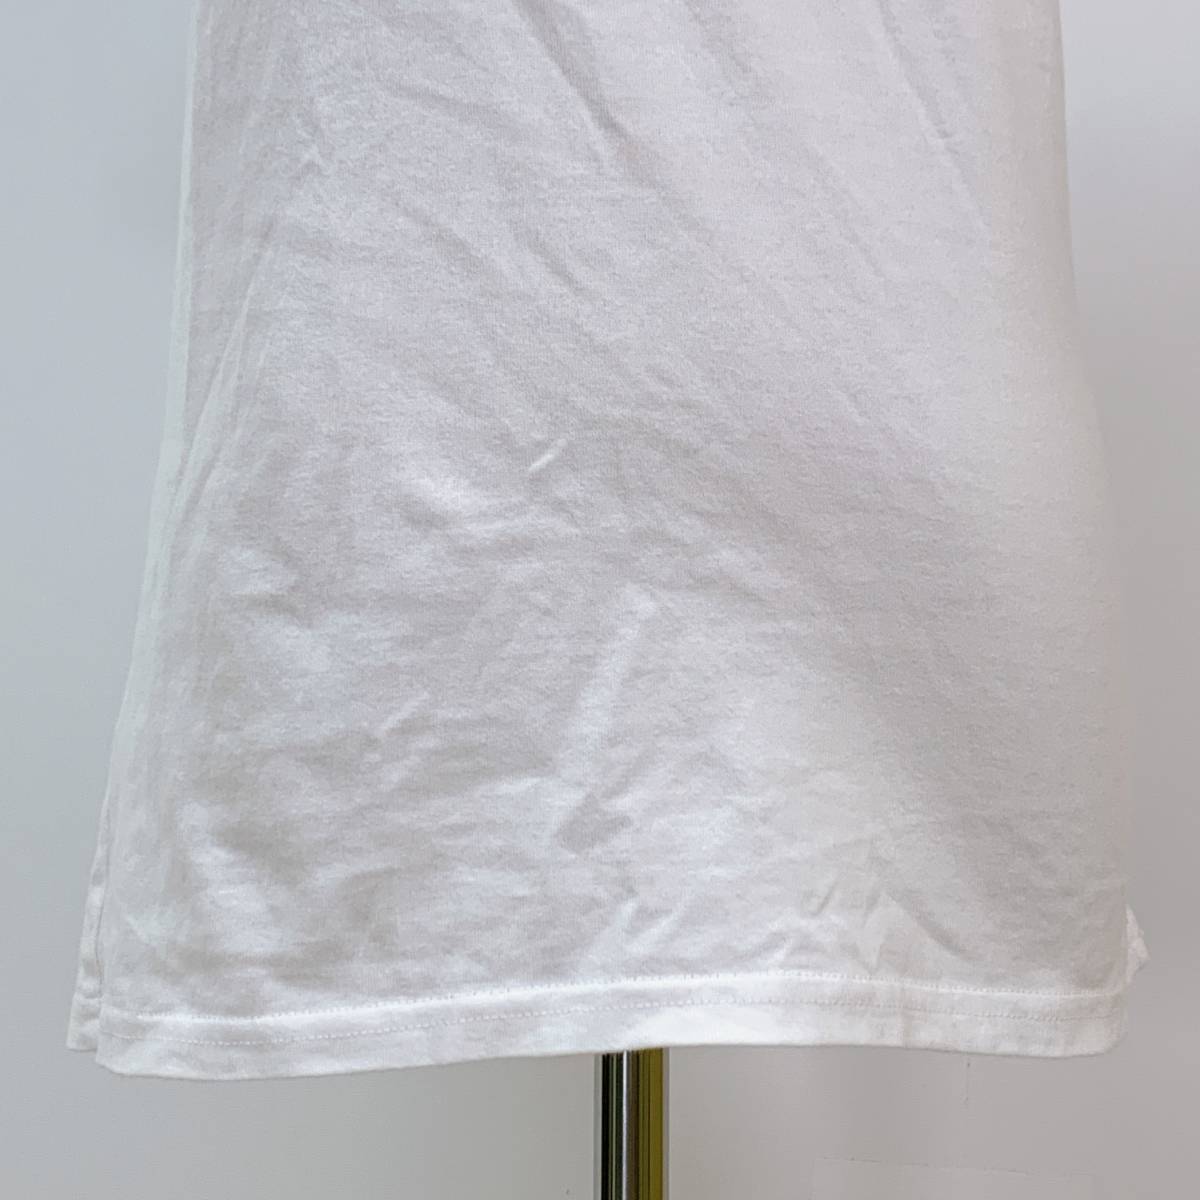 S1841 RUSTY レディース Tシャツ 半袖 キュート M ビッグロゴ 綿100% 万能 人気 シンプルデイリーカジュアル_画像6